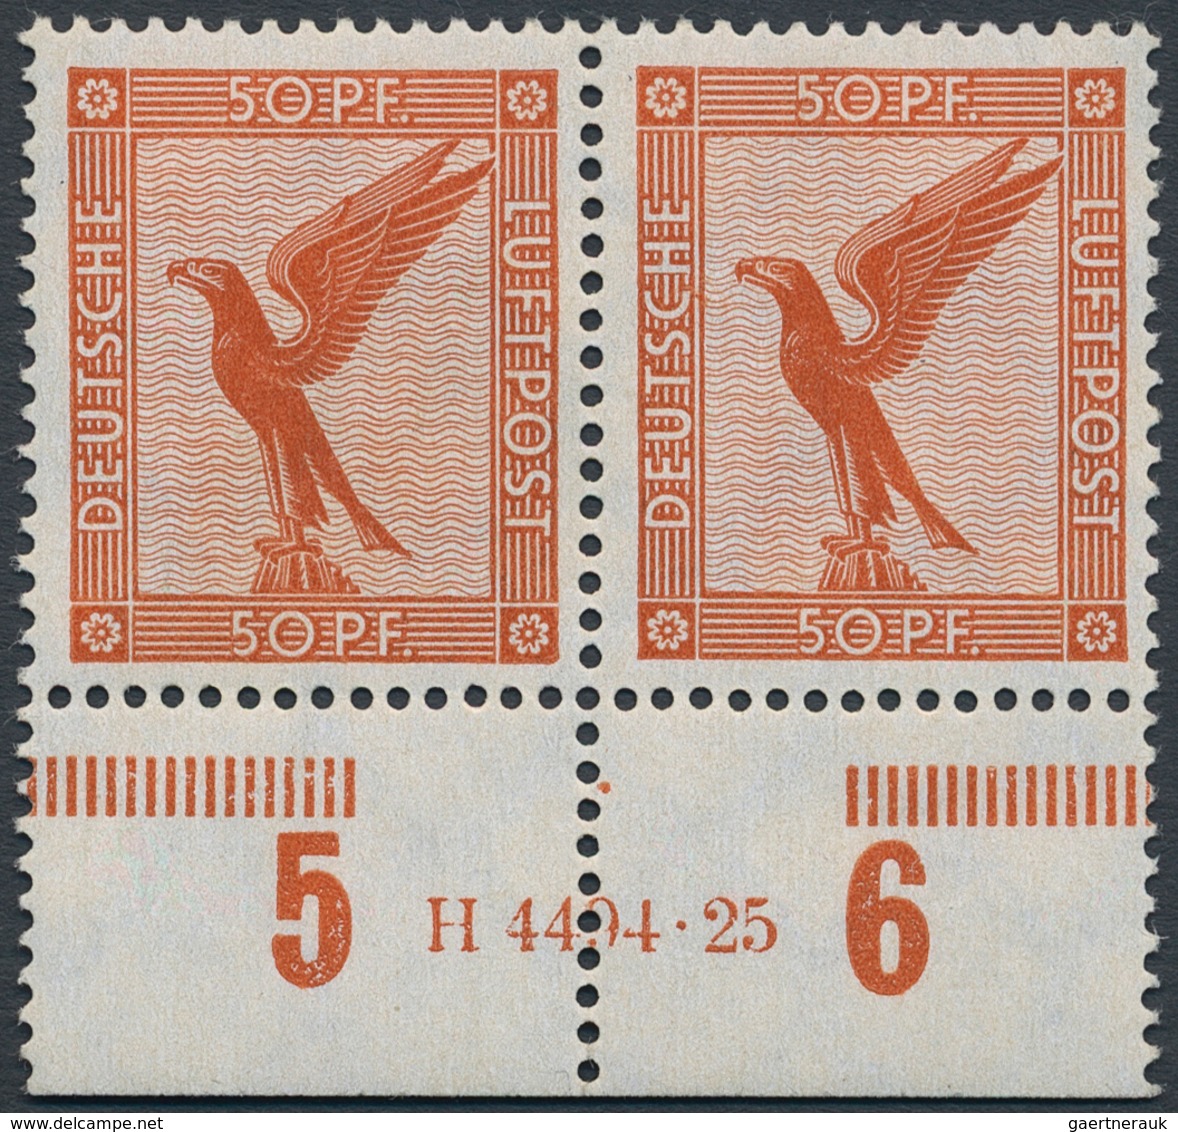 Deutsches Reich - Weimar: 1926, Flugpost 50 Pfg, Waagerechtes Postfrisches Paar Mit HAN "H 4494.25", - Unused Stamps